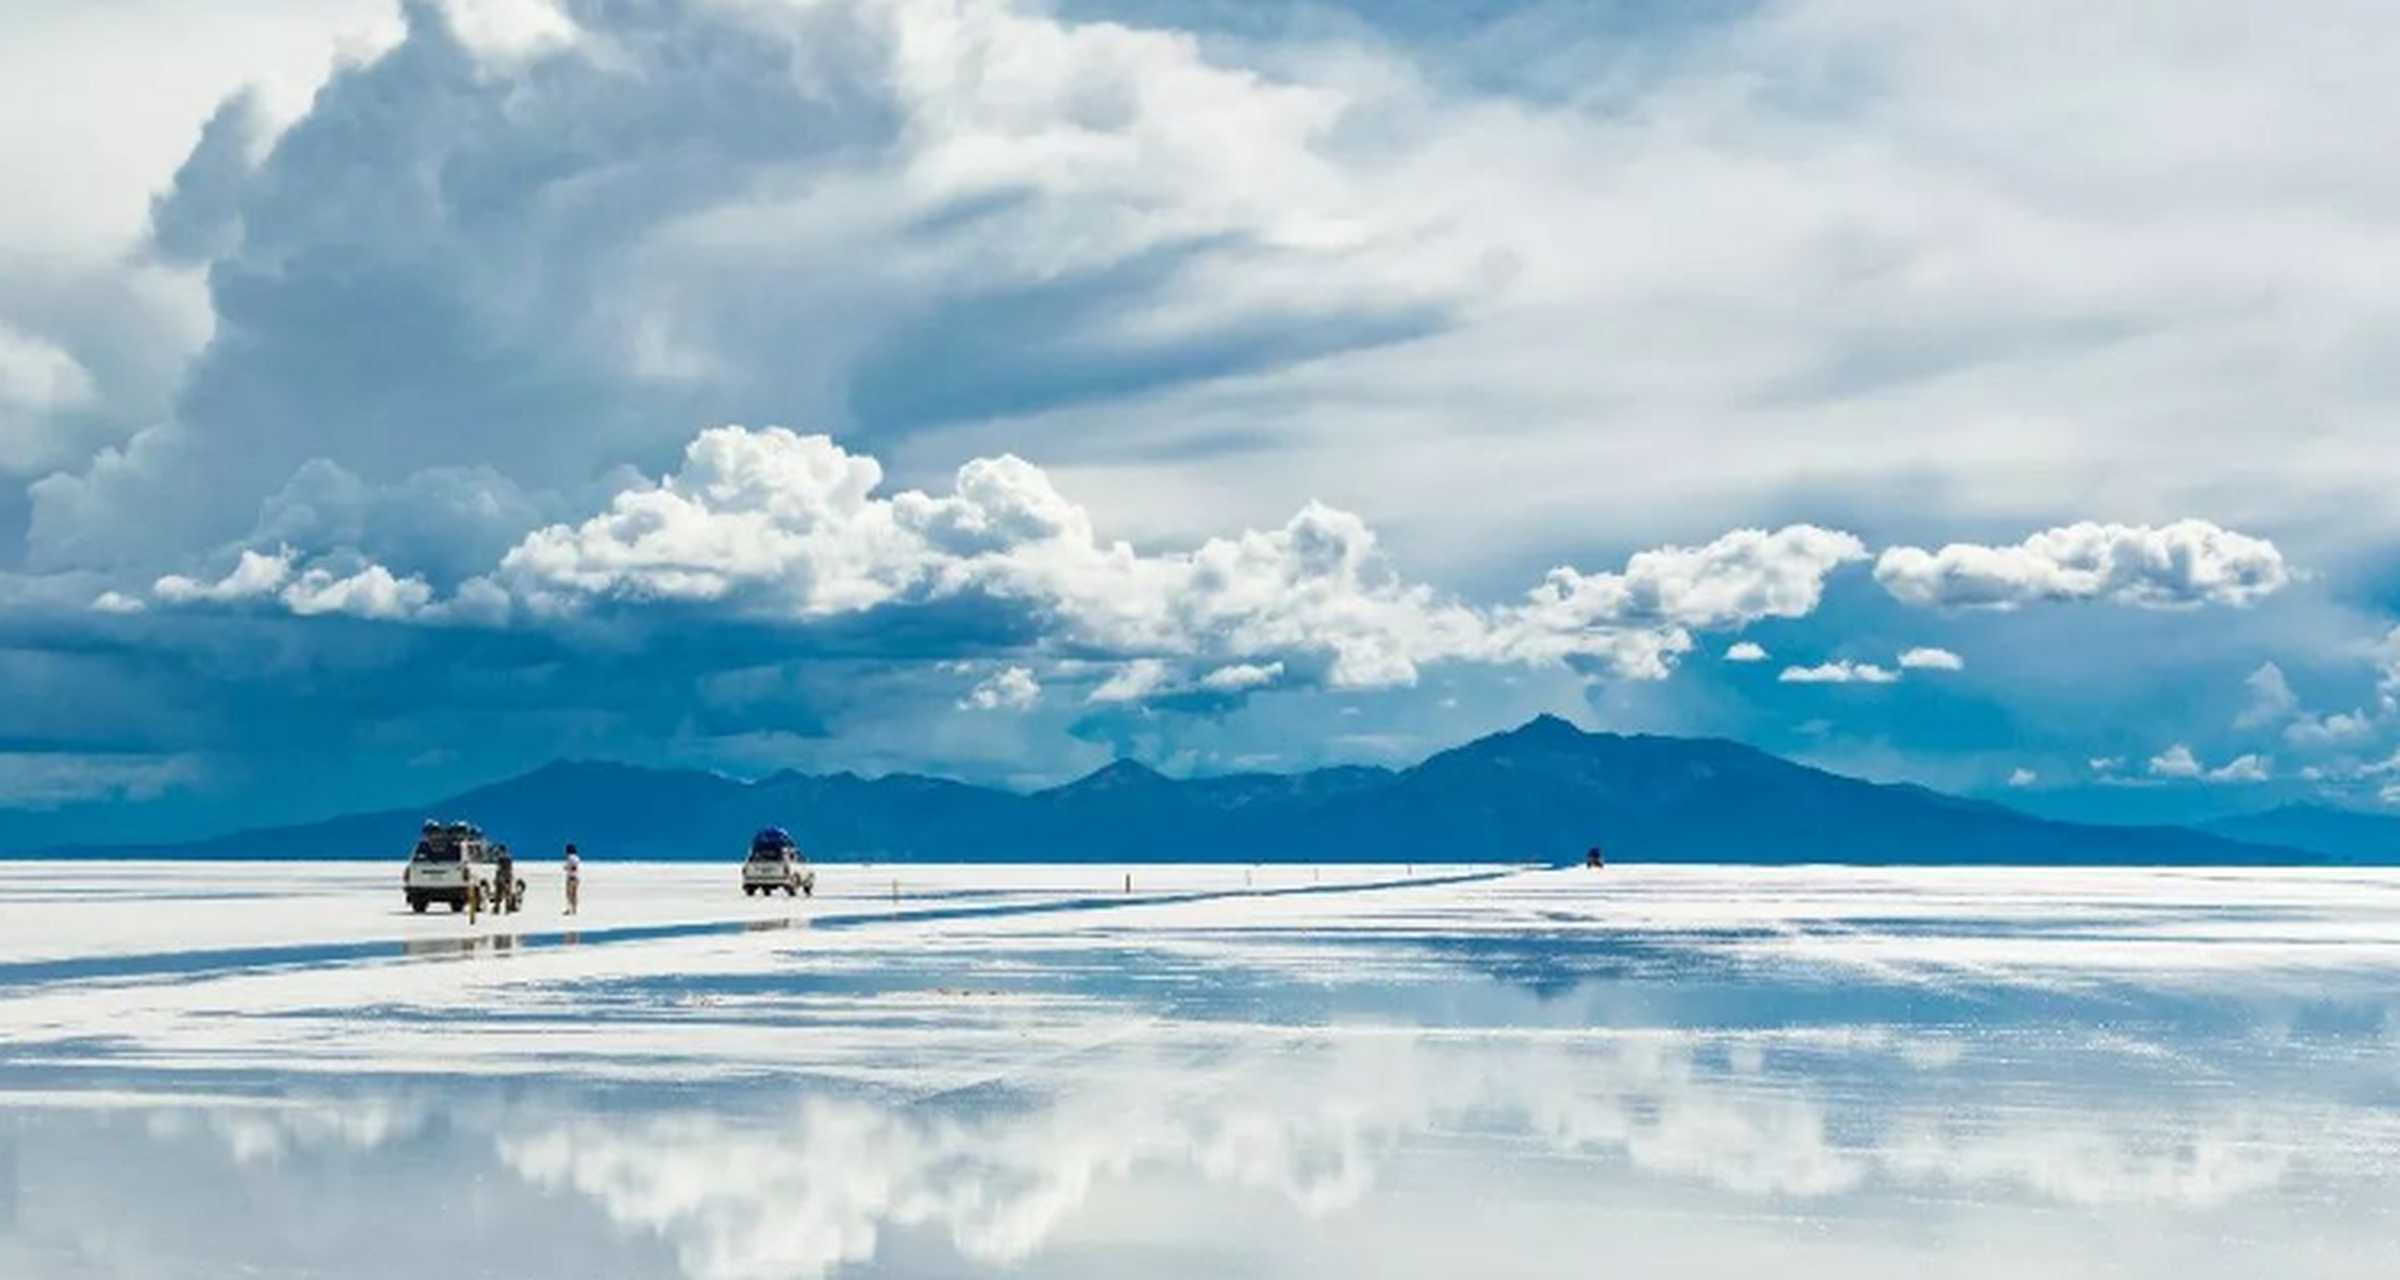 世界奇观 乌尤尼盐沼——玻利维亚 为世界最大的盐层覆盖的荒原,有